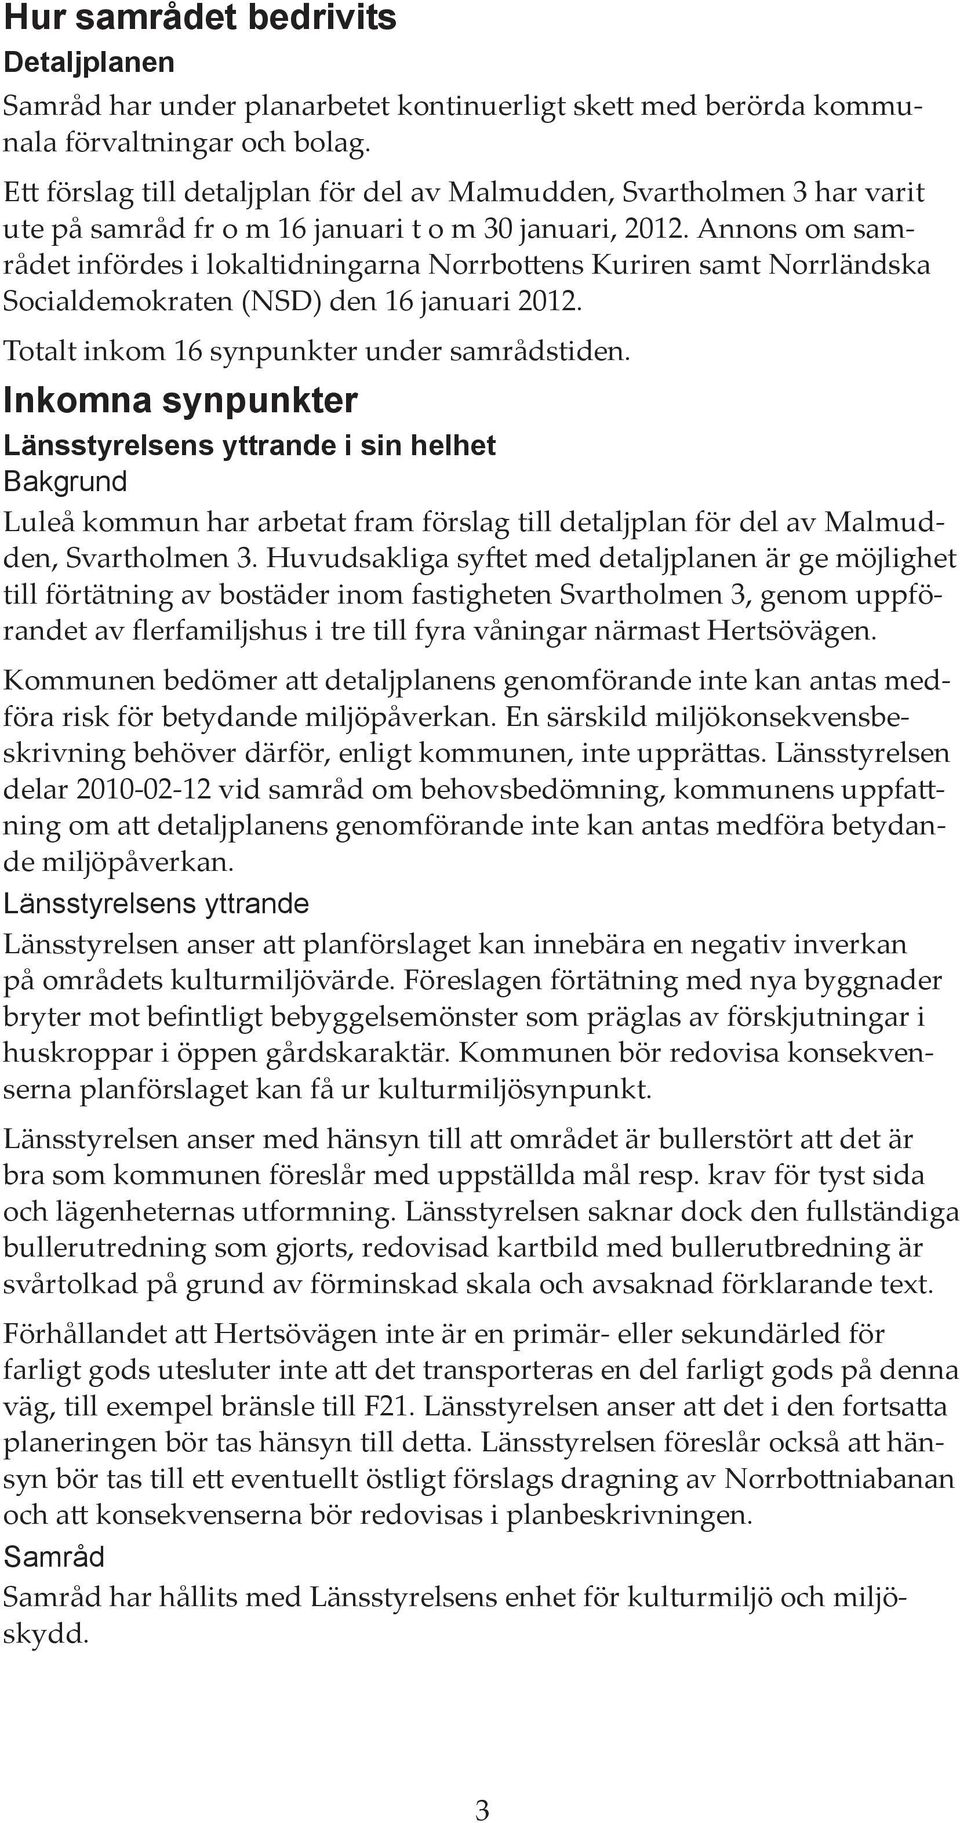 Annons om samrådet infördes i lokaltidningarna Norrbottens Kuriren samt Norrländska Socialdemokraten (NSD) den 16 januari 2012. Totalt inkom 16 synpunkter under samrådstiden.